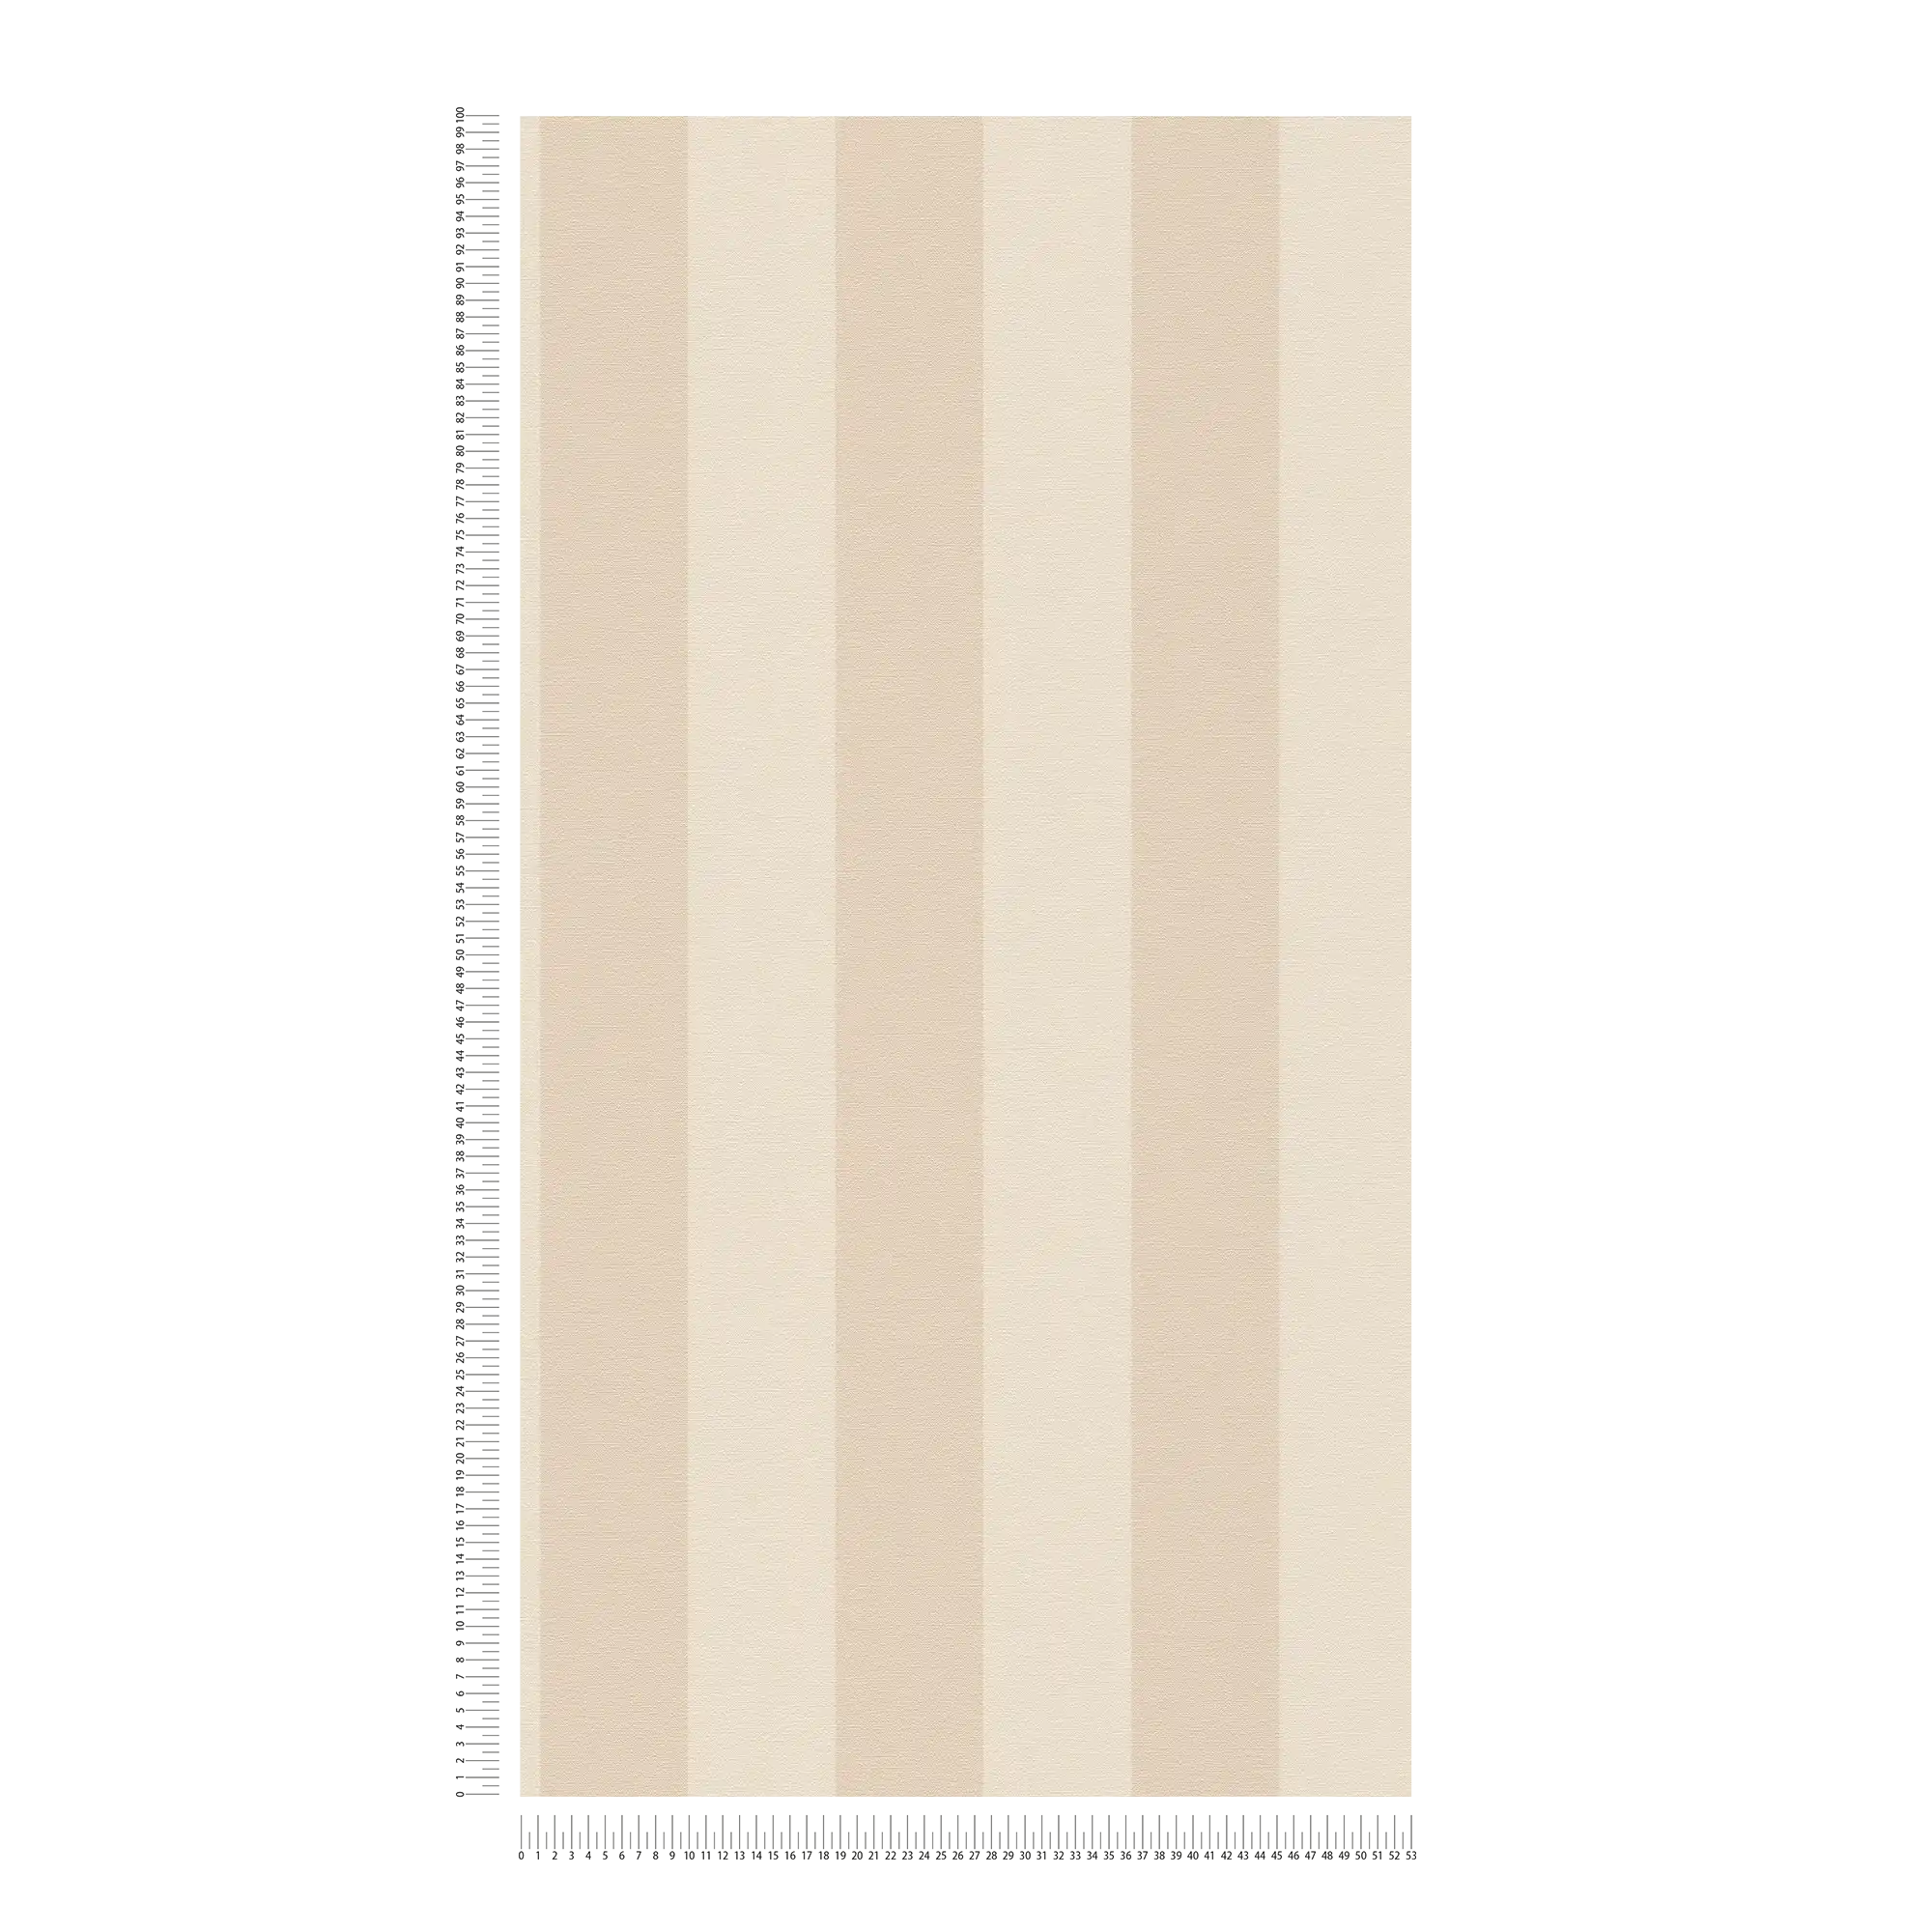             Vliesbehang met strepen en linnenlook PVC-vrij - beige, wit
        